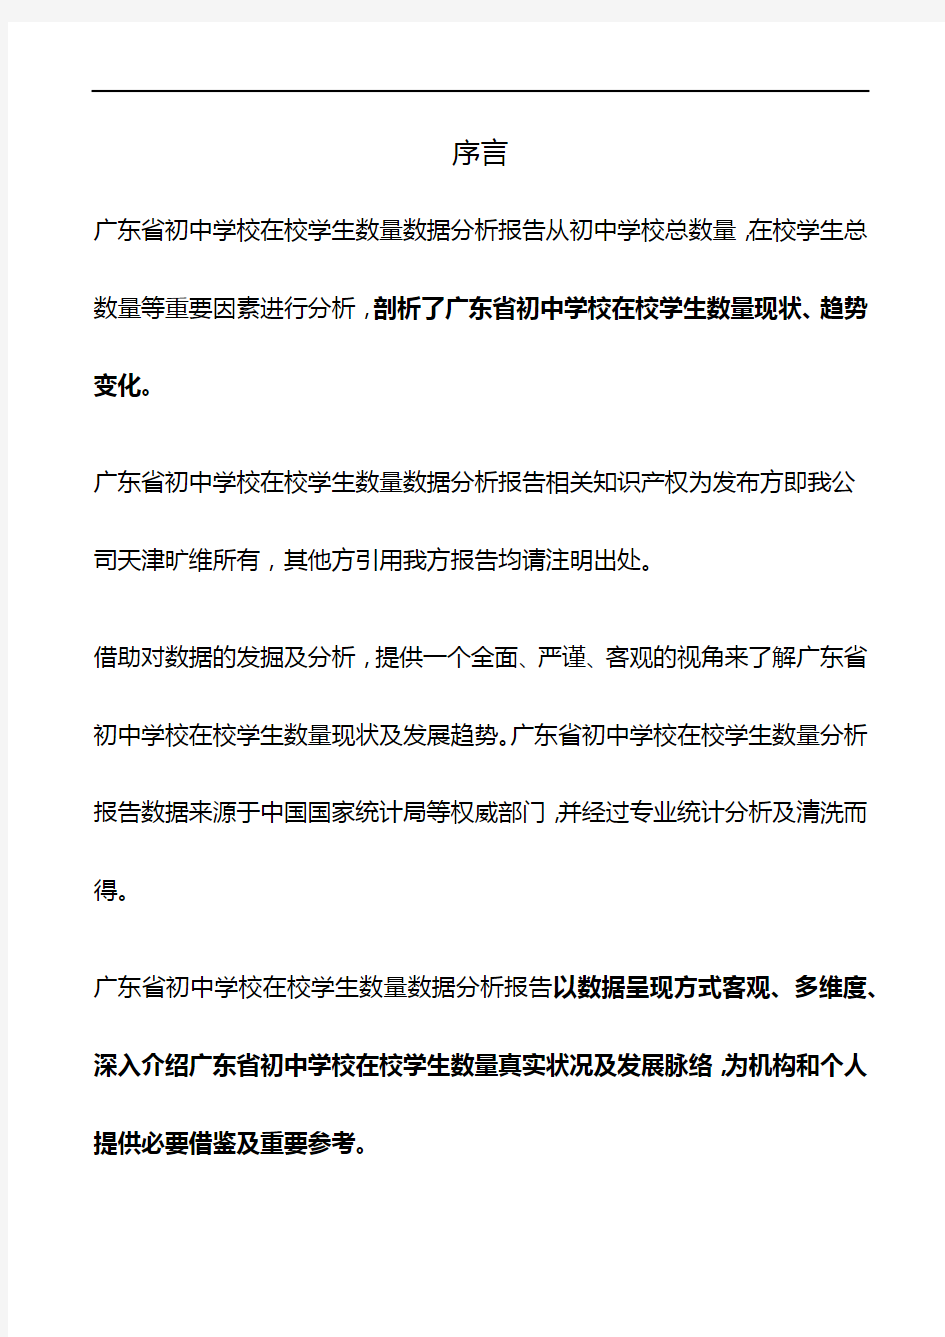 广东省初中学校在校学生数量数据分析报告2019版